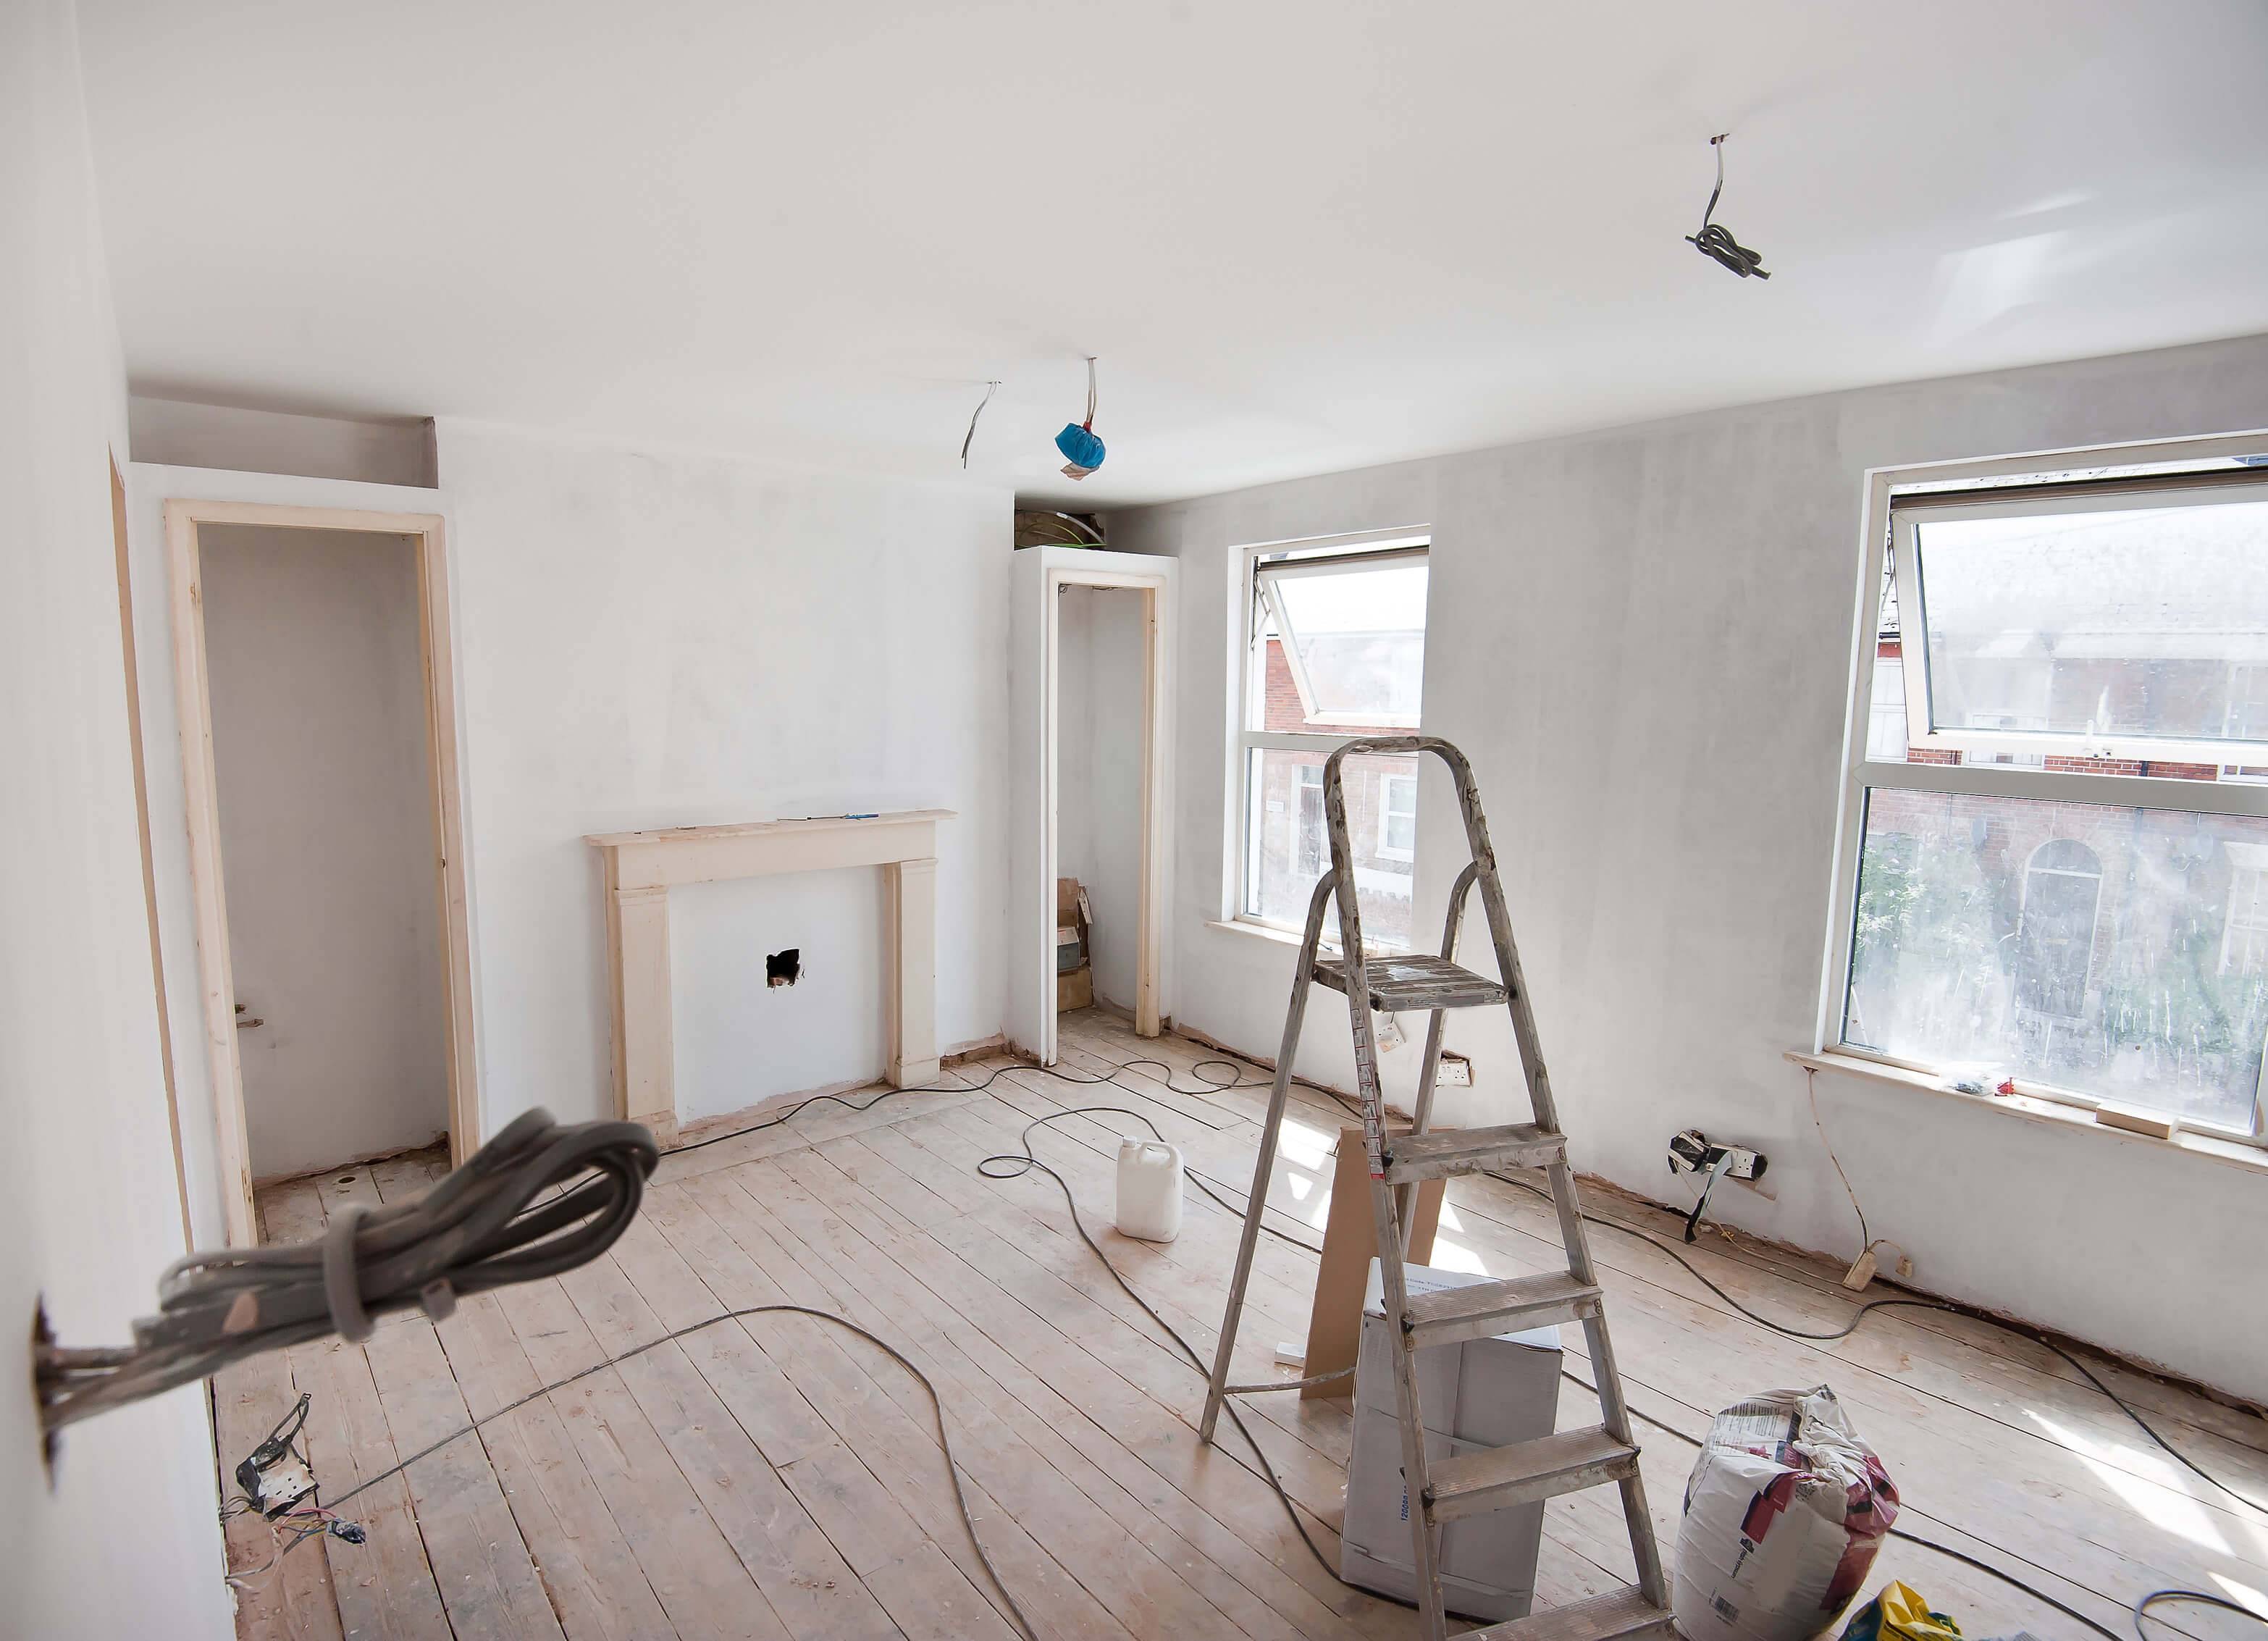 Последовательность ремонта квартиры: с чего начать, этапы работ